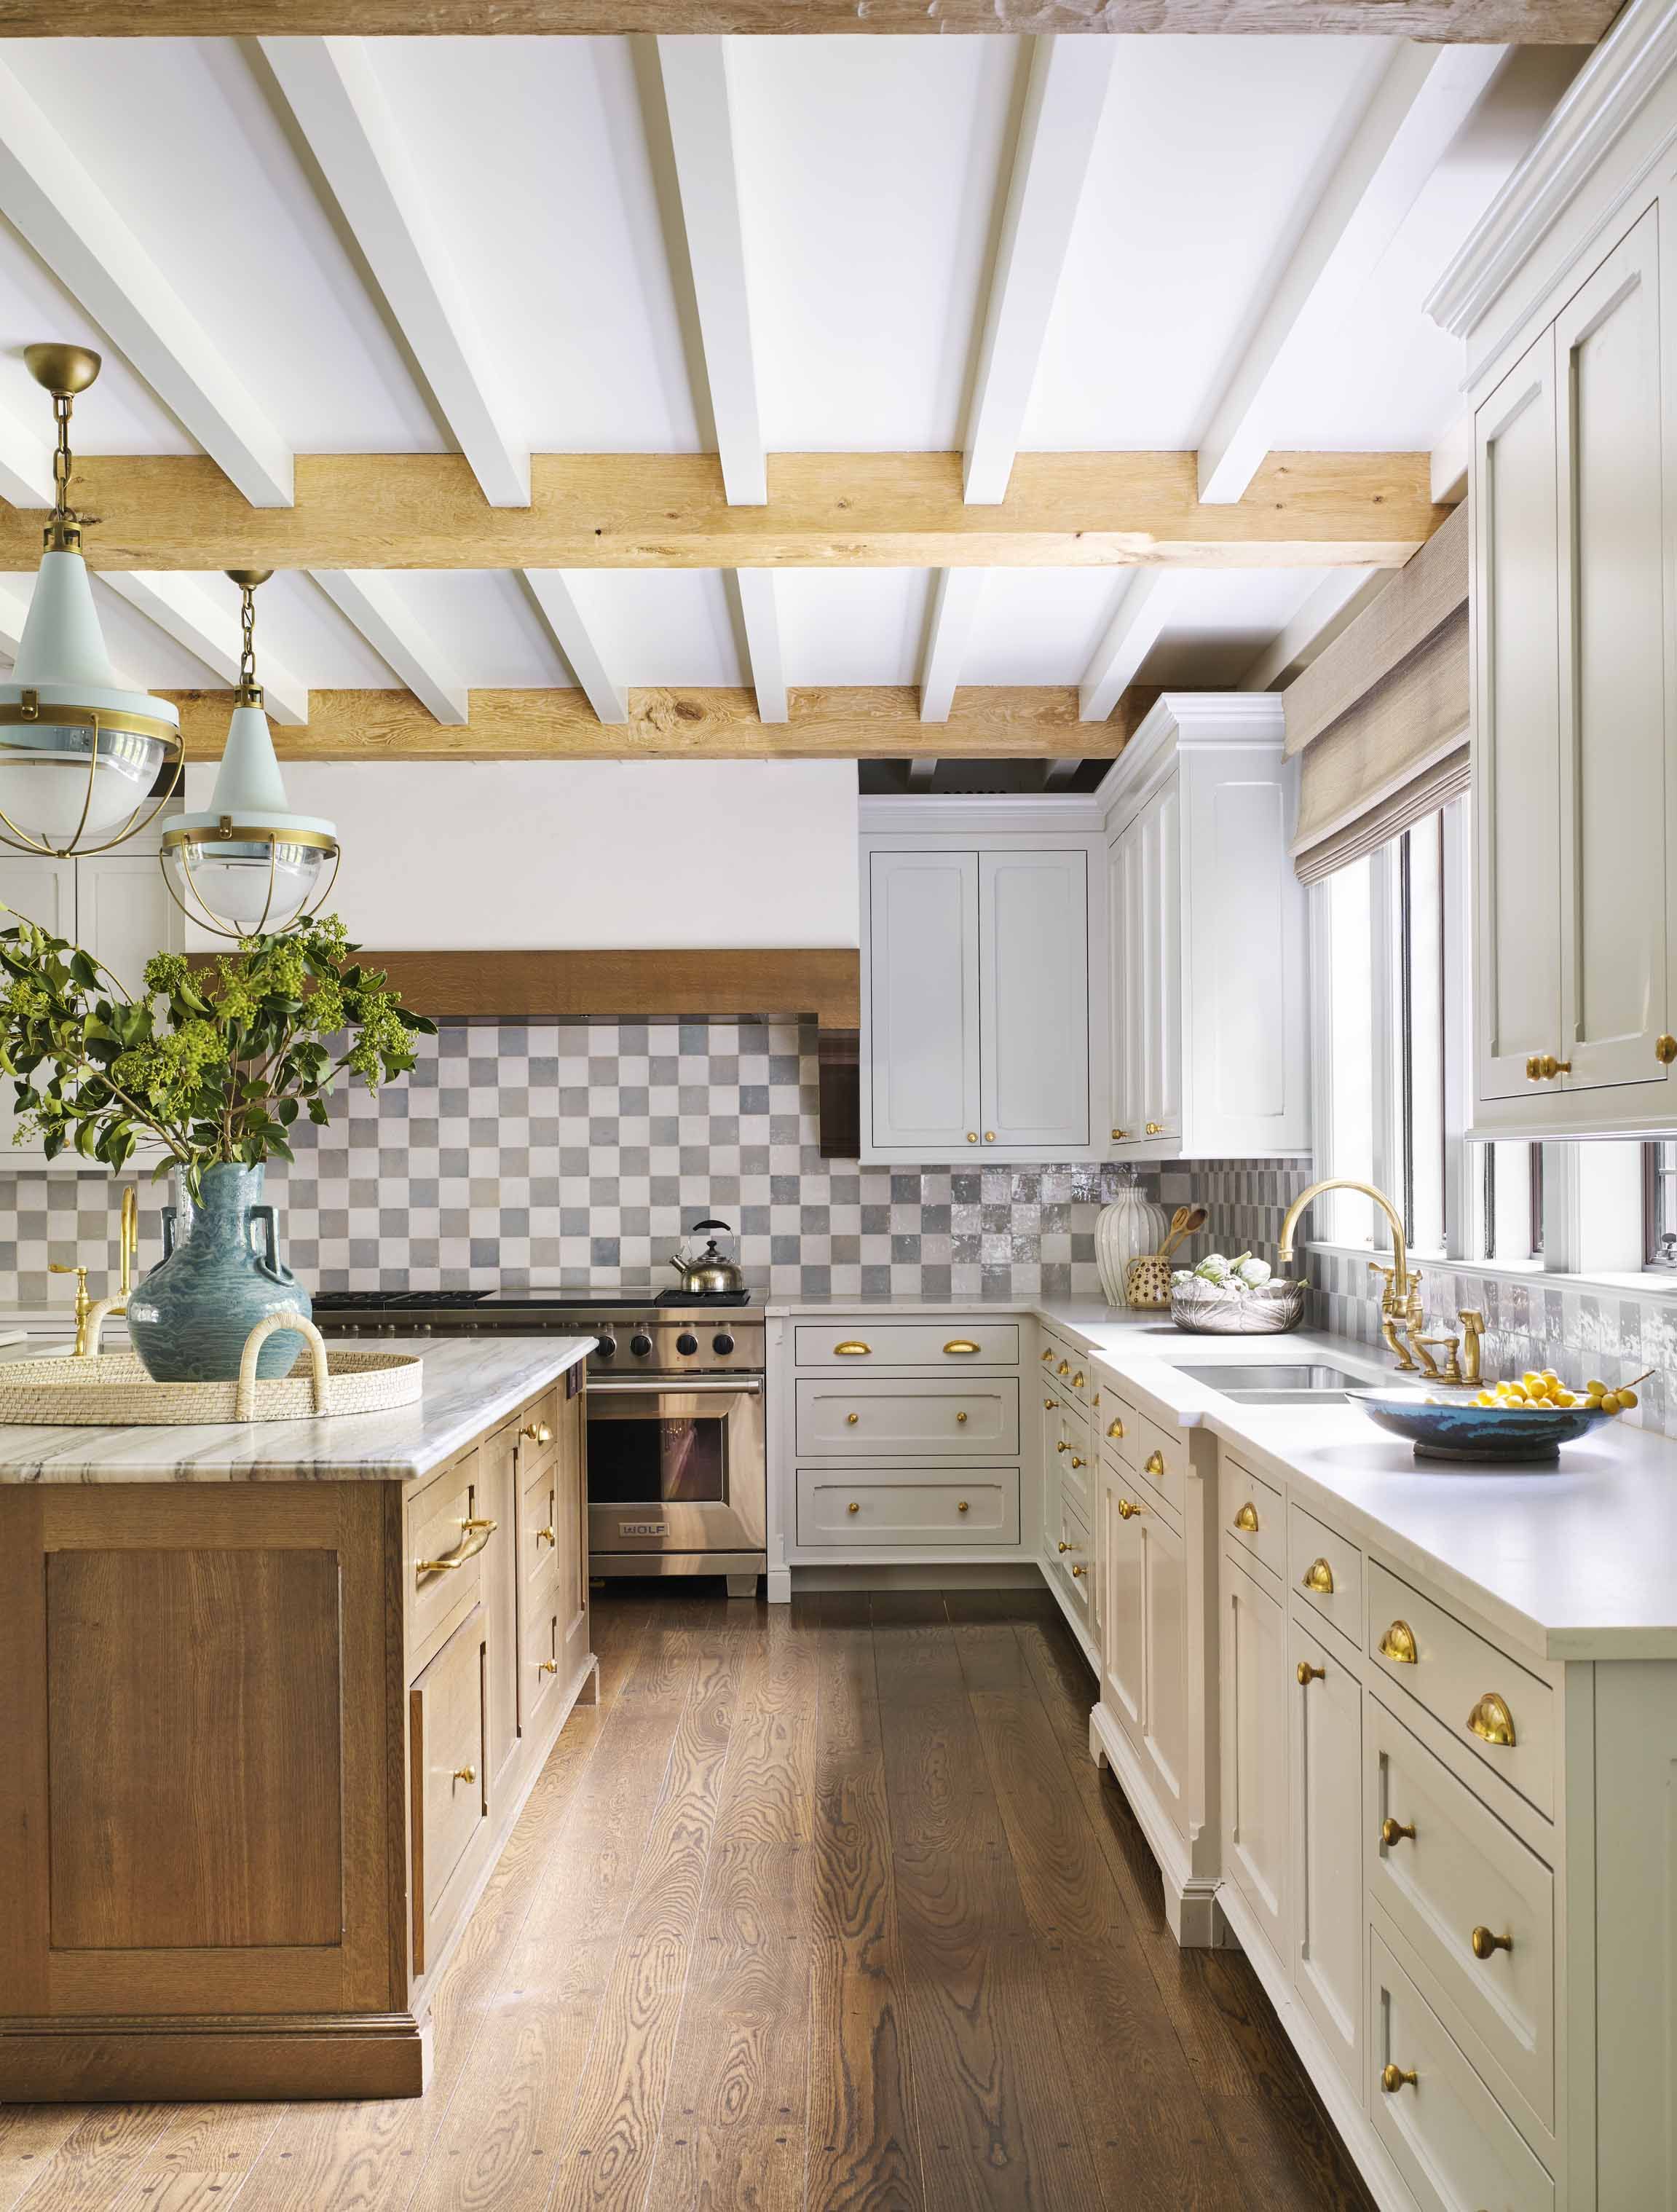 20 Best Kitchen Backsplash Ideas 20   Tile Designs for Kitchens